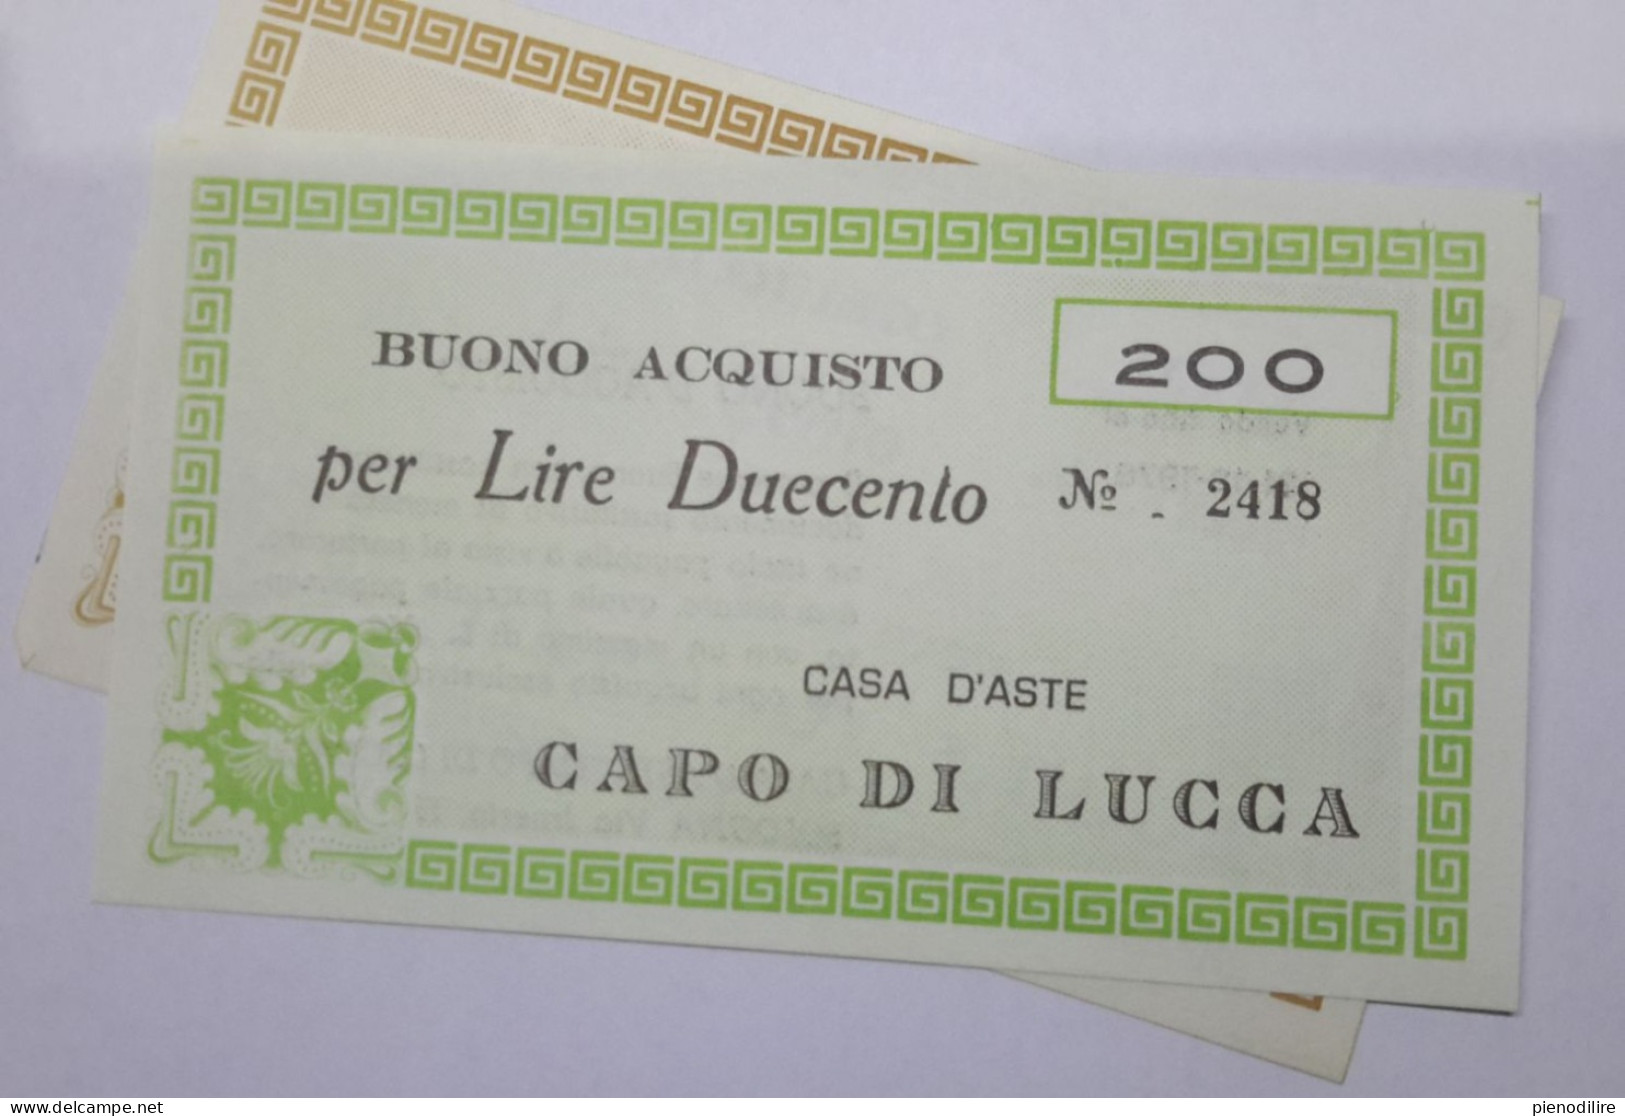 LOTTO 5Pz. 100 200 300 400 LIRE BUONI ACQUISTO CASA D'ASTE CAPO DI LUCCA VALIDO FINO AL 31.12.1976 (A.1) - [10] Cheques Y Mini-cheques